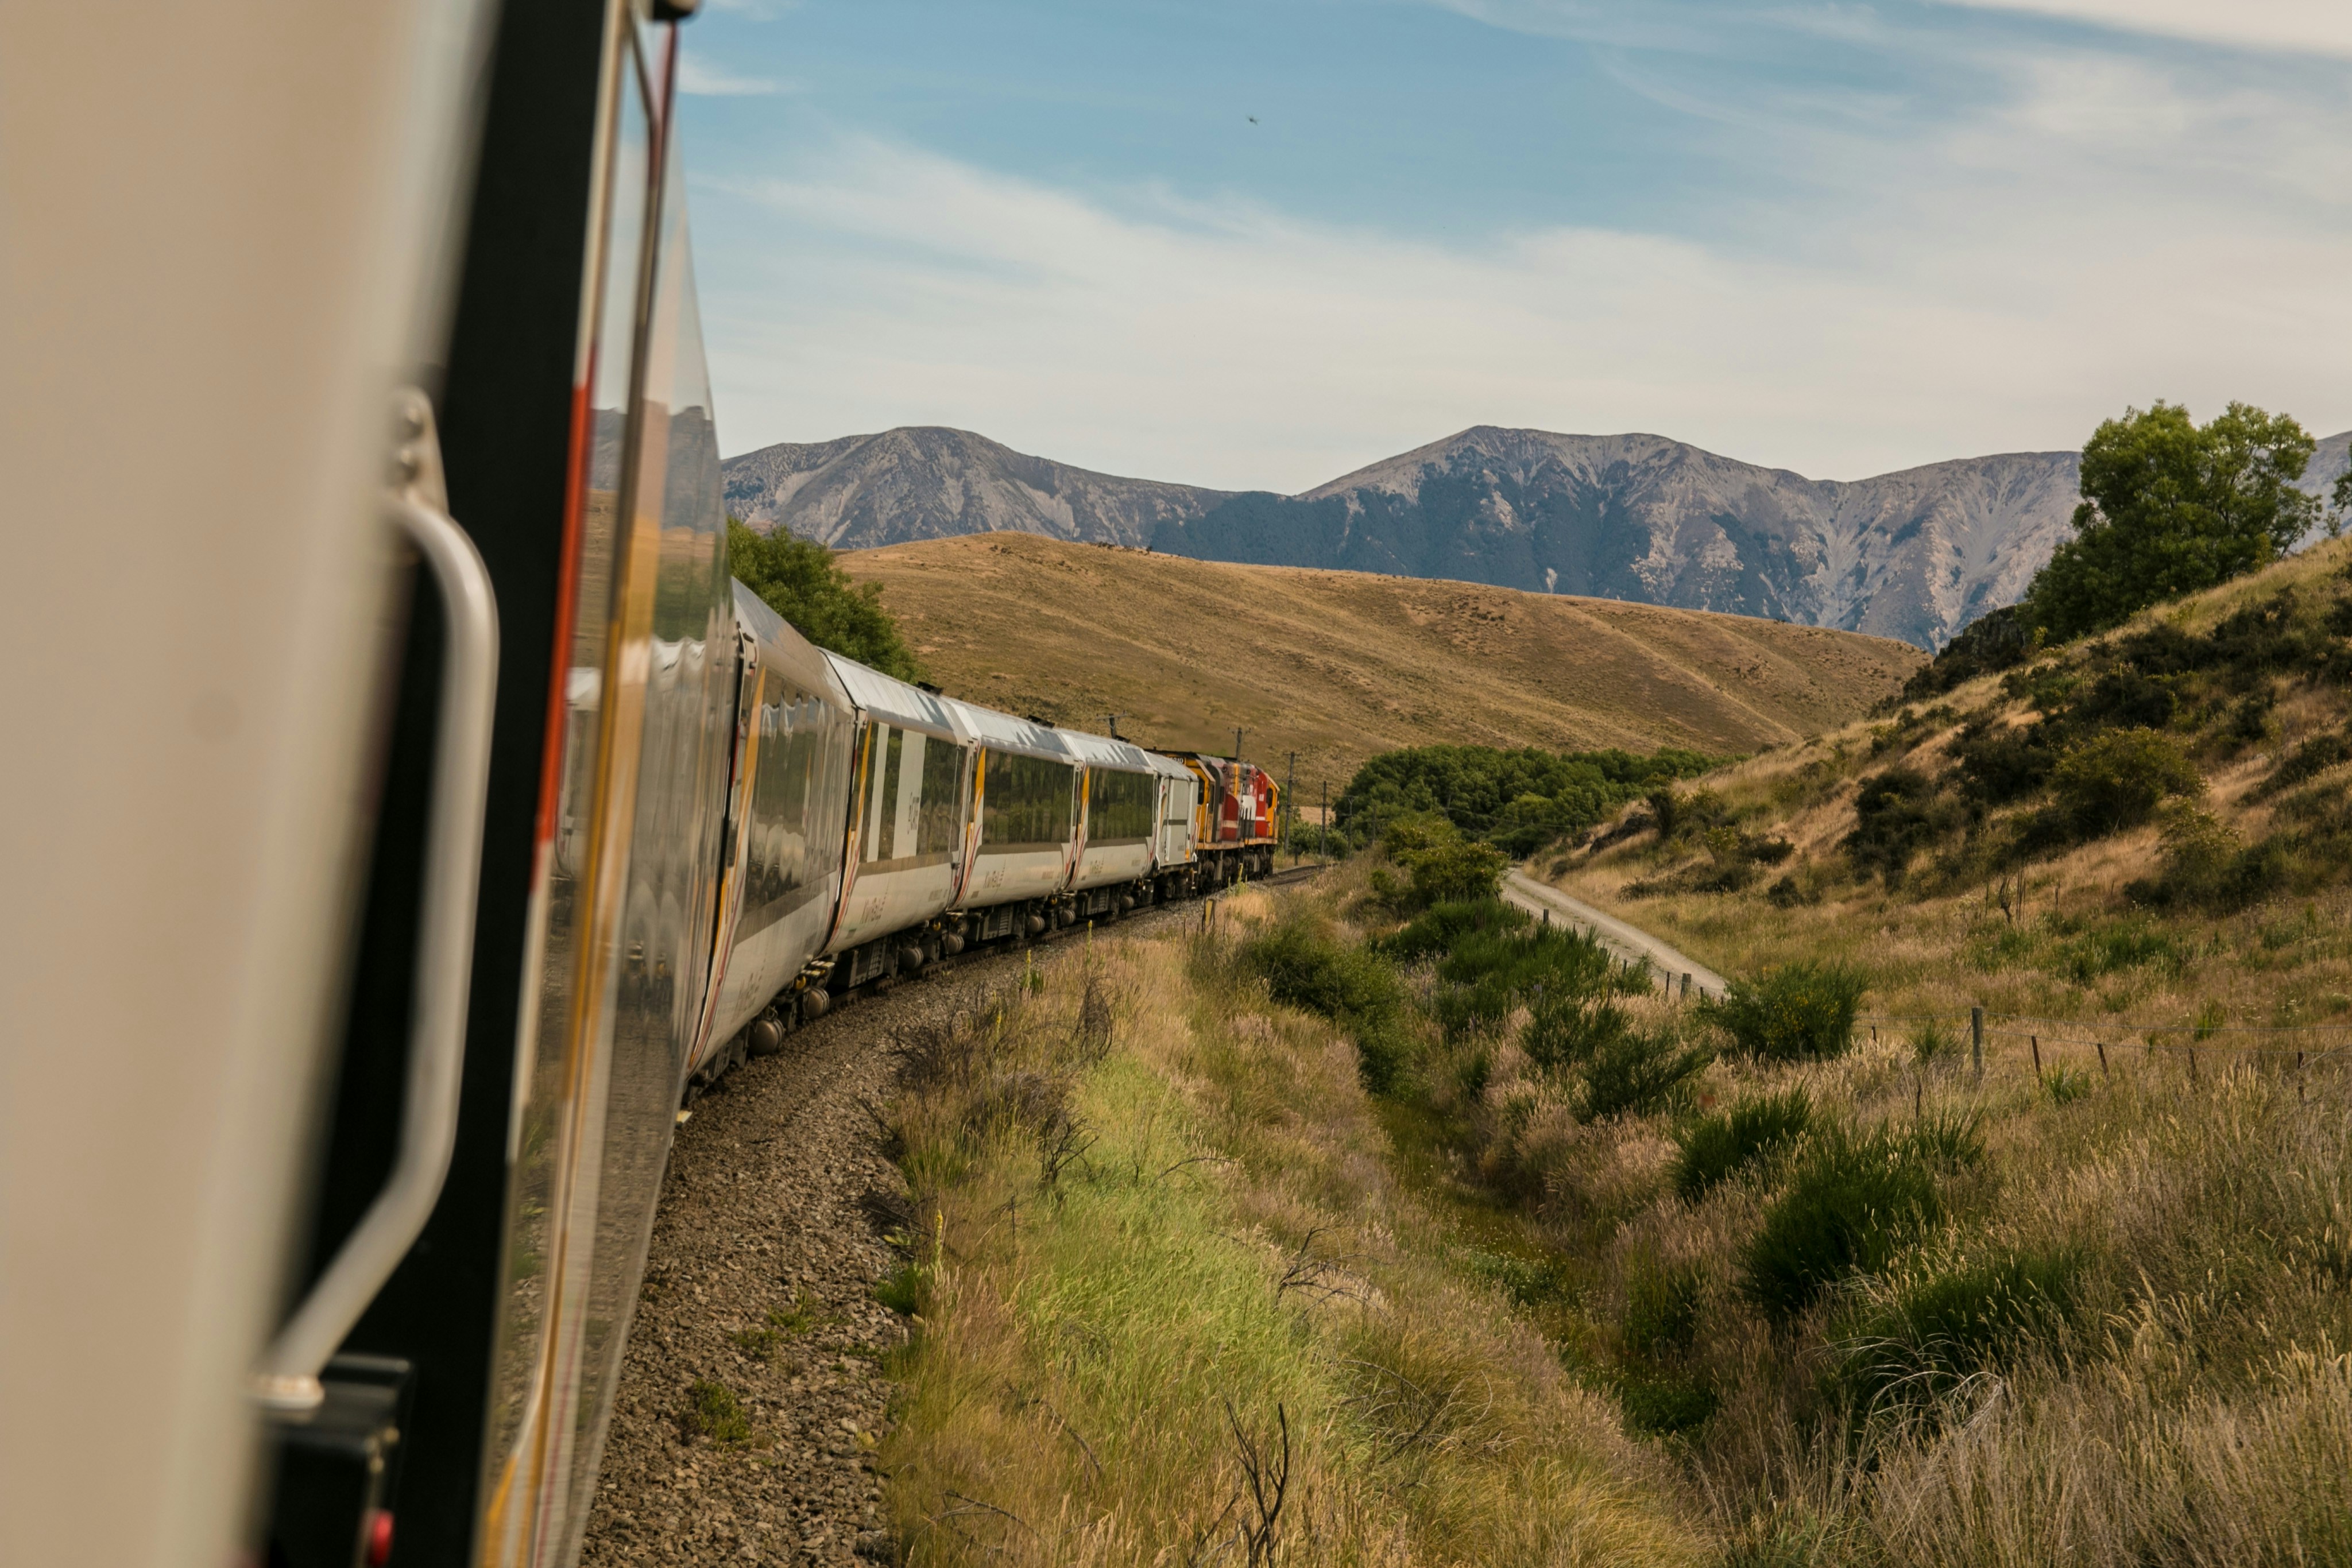 Tren patagonico